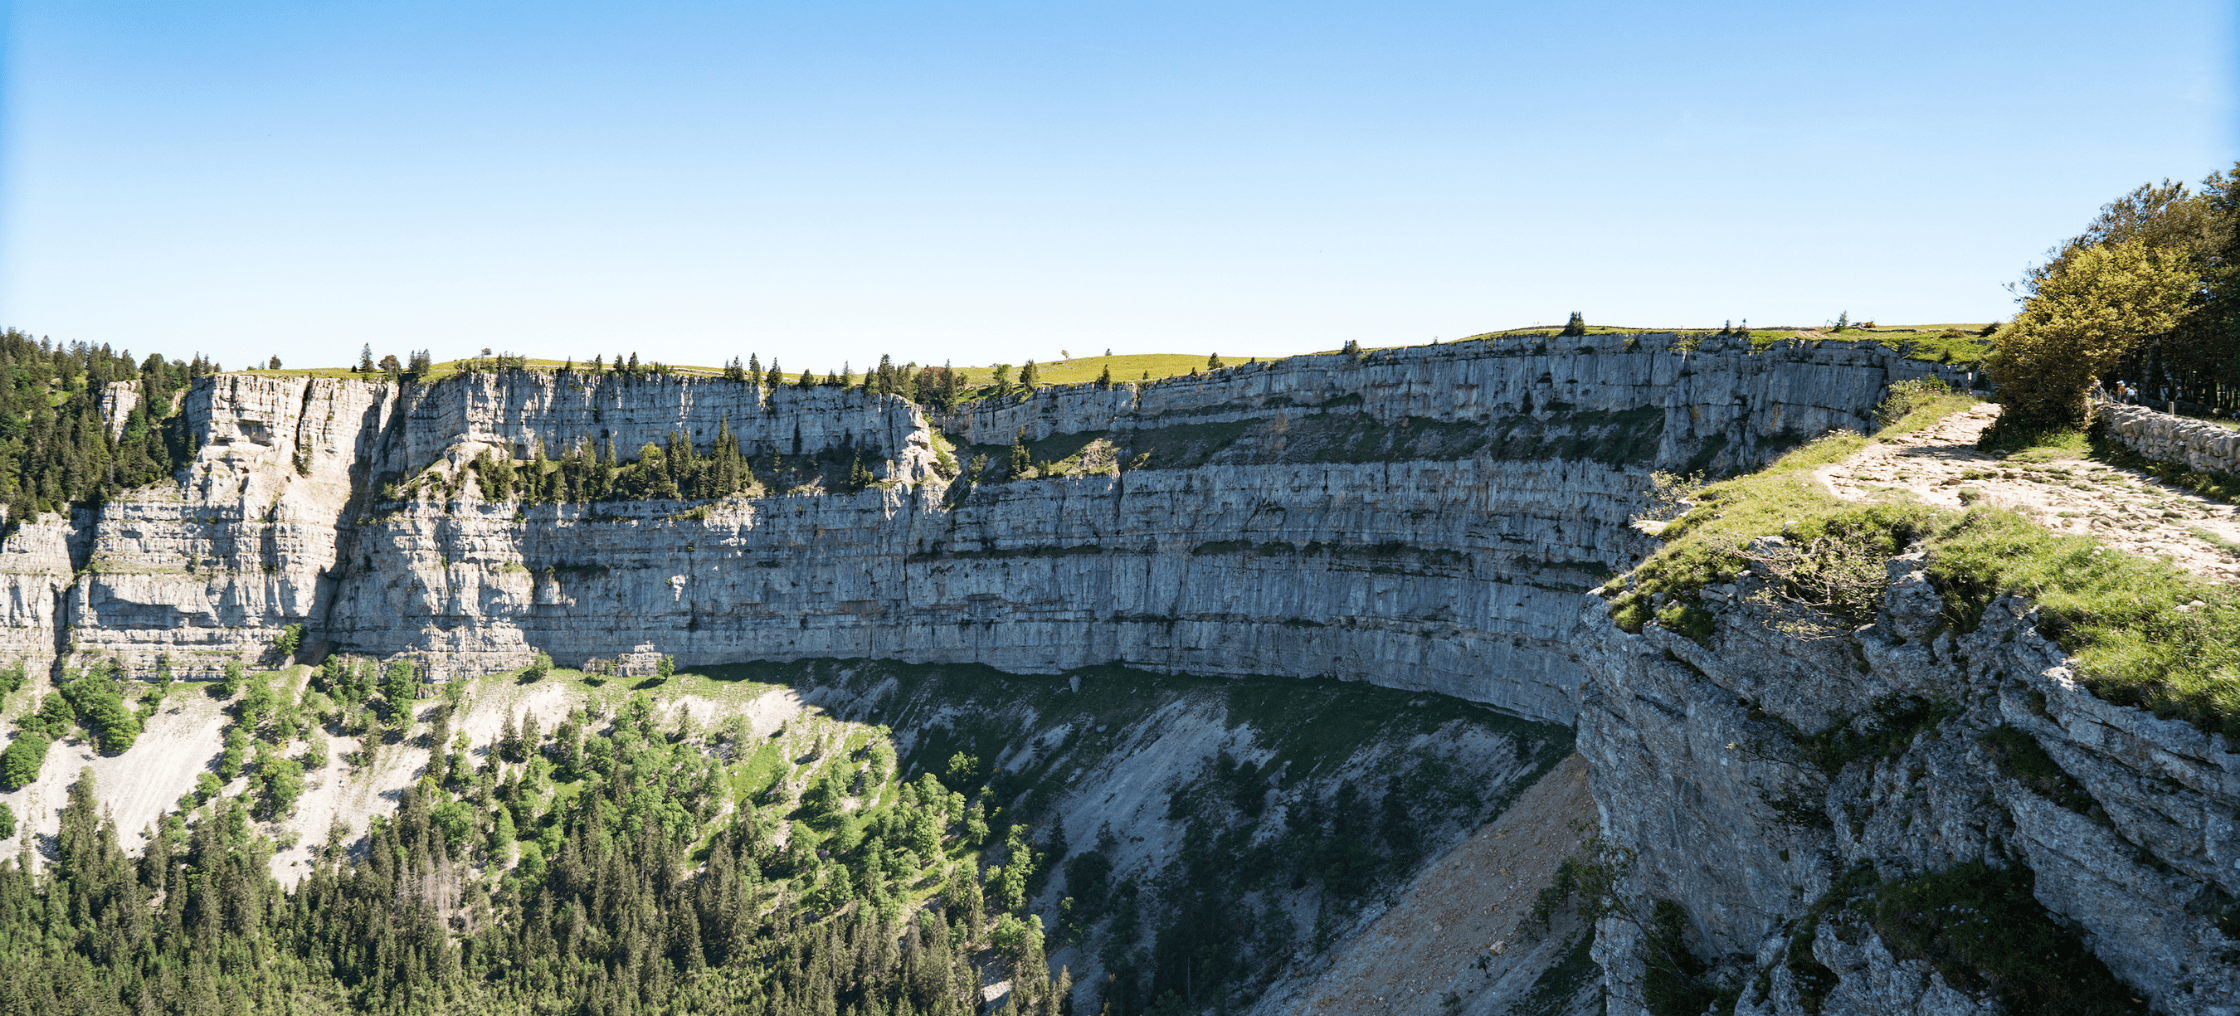 Der Grand Canyon der Schweiz “Creux du Van” ist ein echtes Naturphänomen.